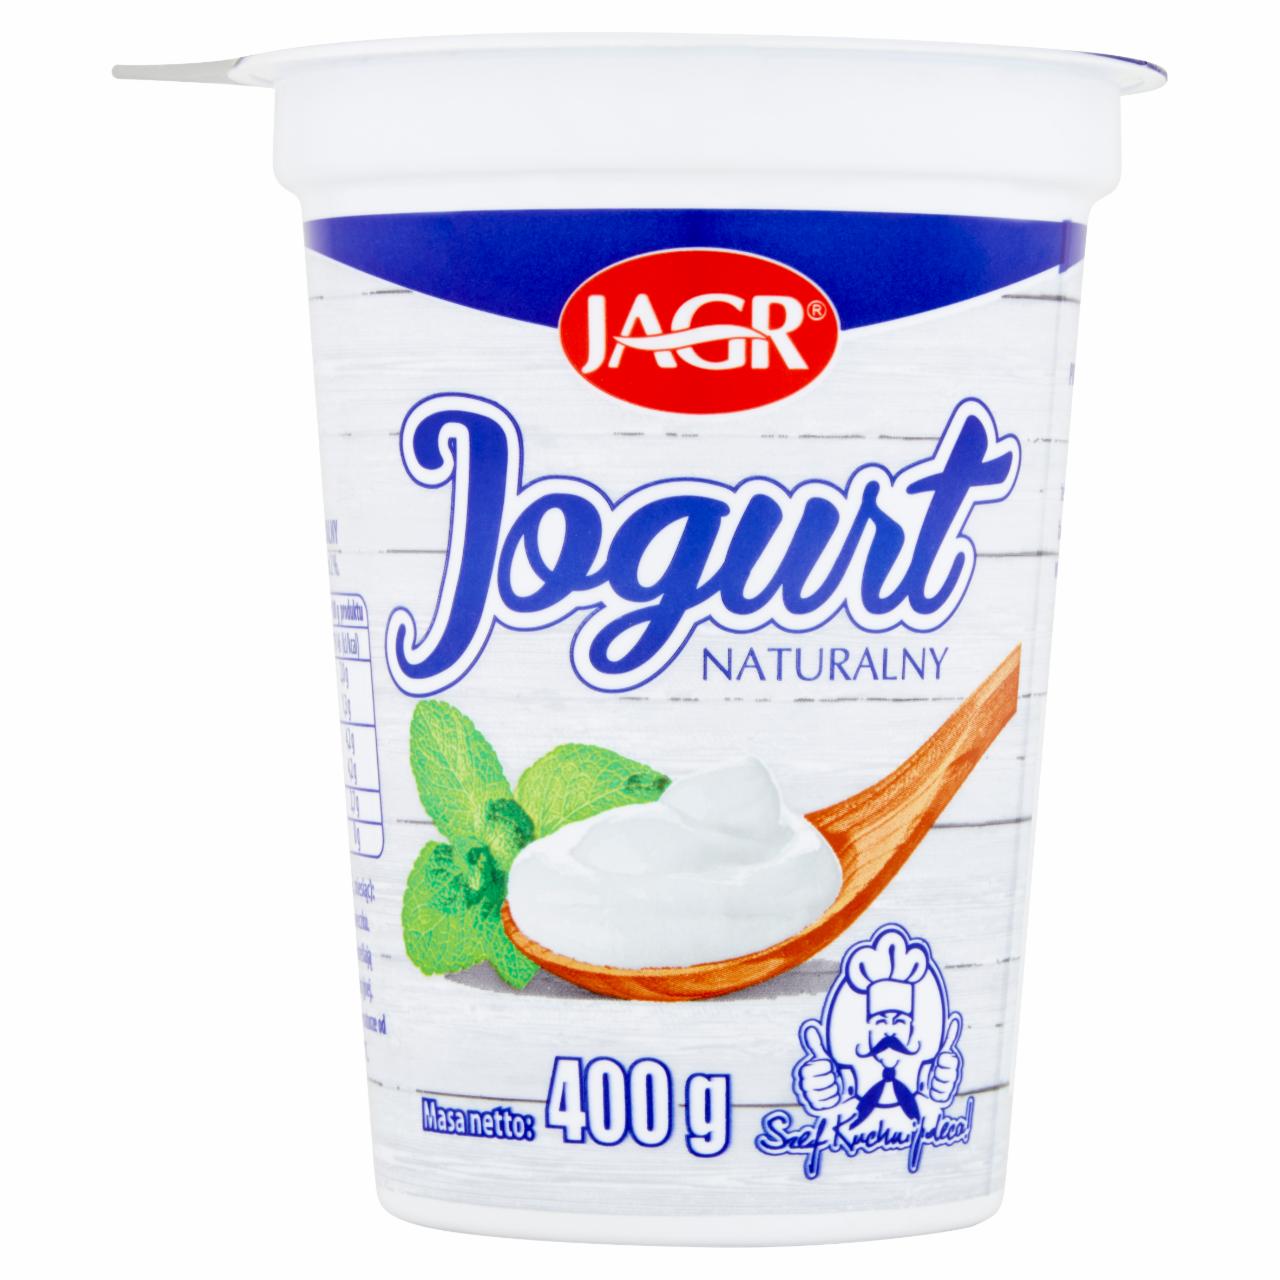 Zdjęcia - Jagr Jogurt naturalny 400 g